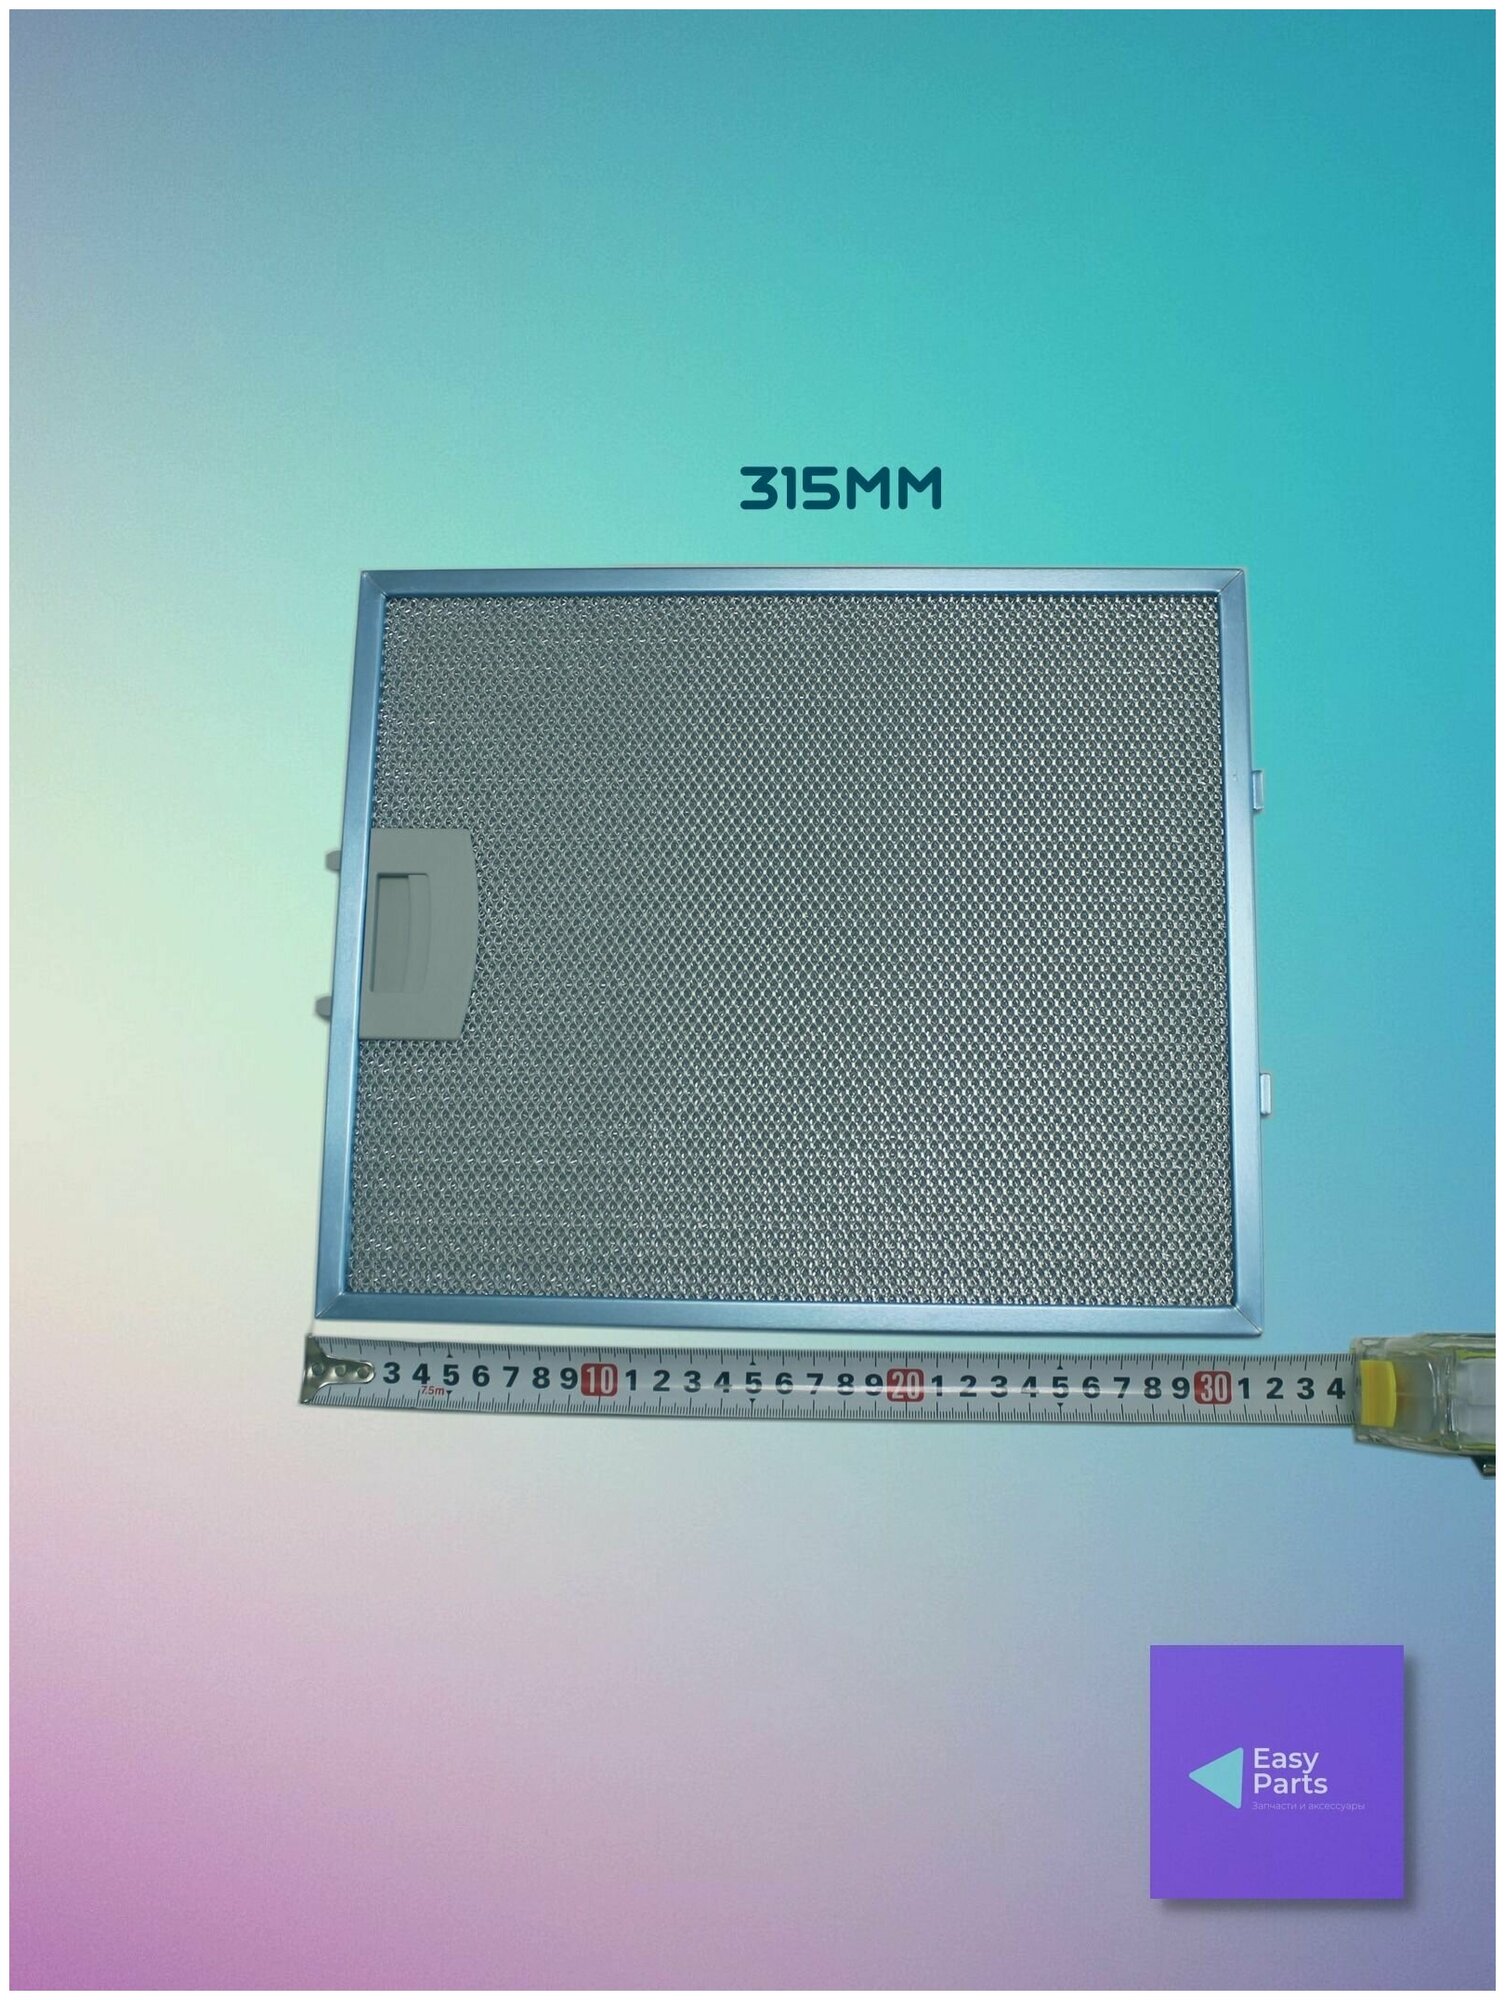 Жировой фильтр (кассета) алюминиевый (металлический) рамочный для кухонной вытяжки, многоразовый, 265х315х8мм